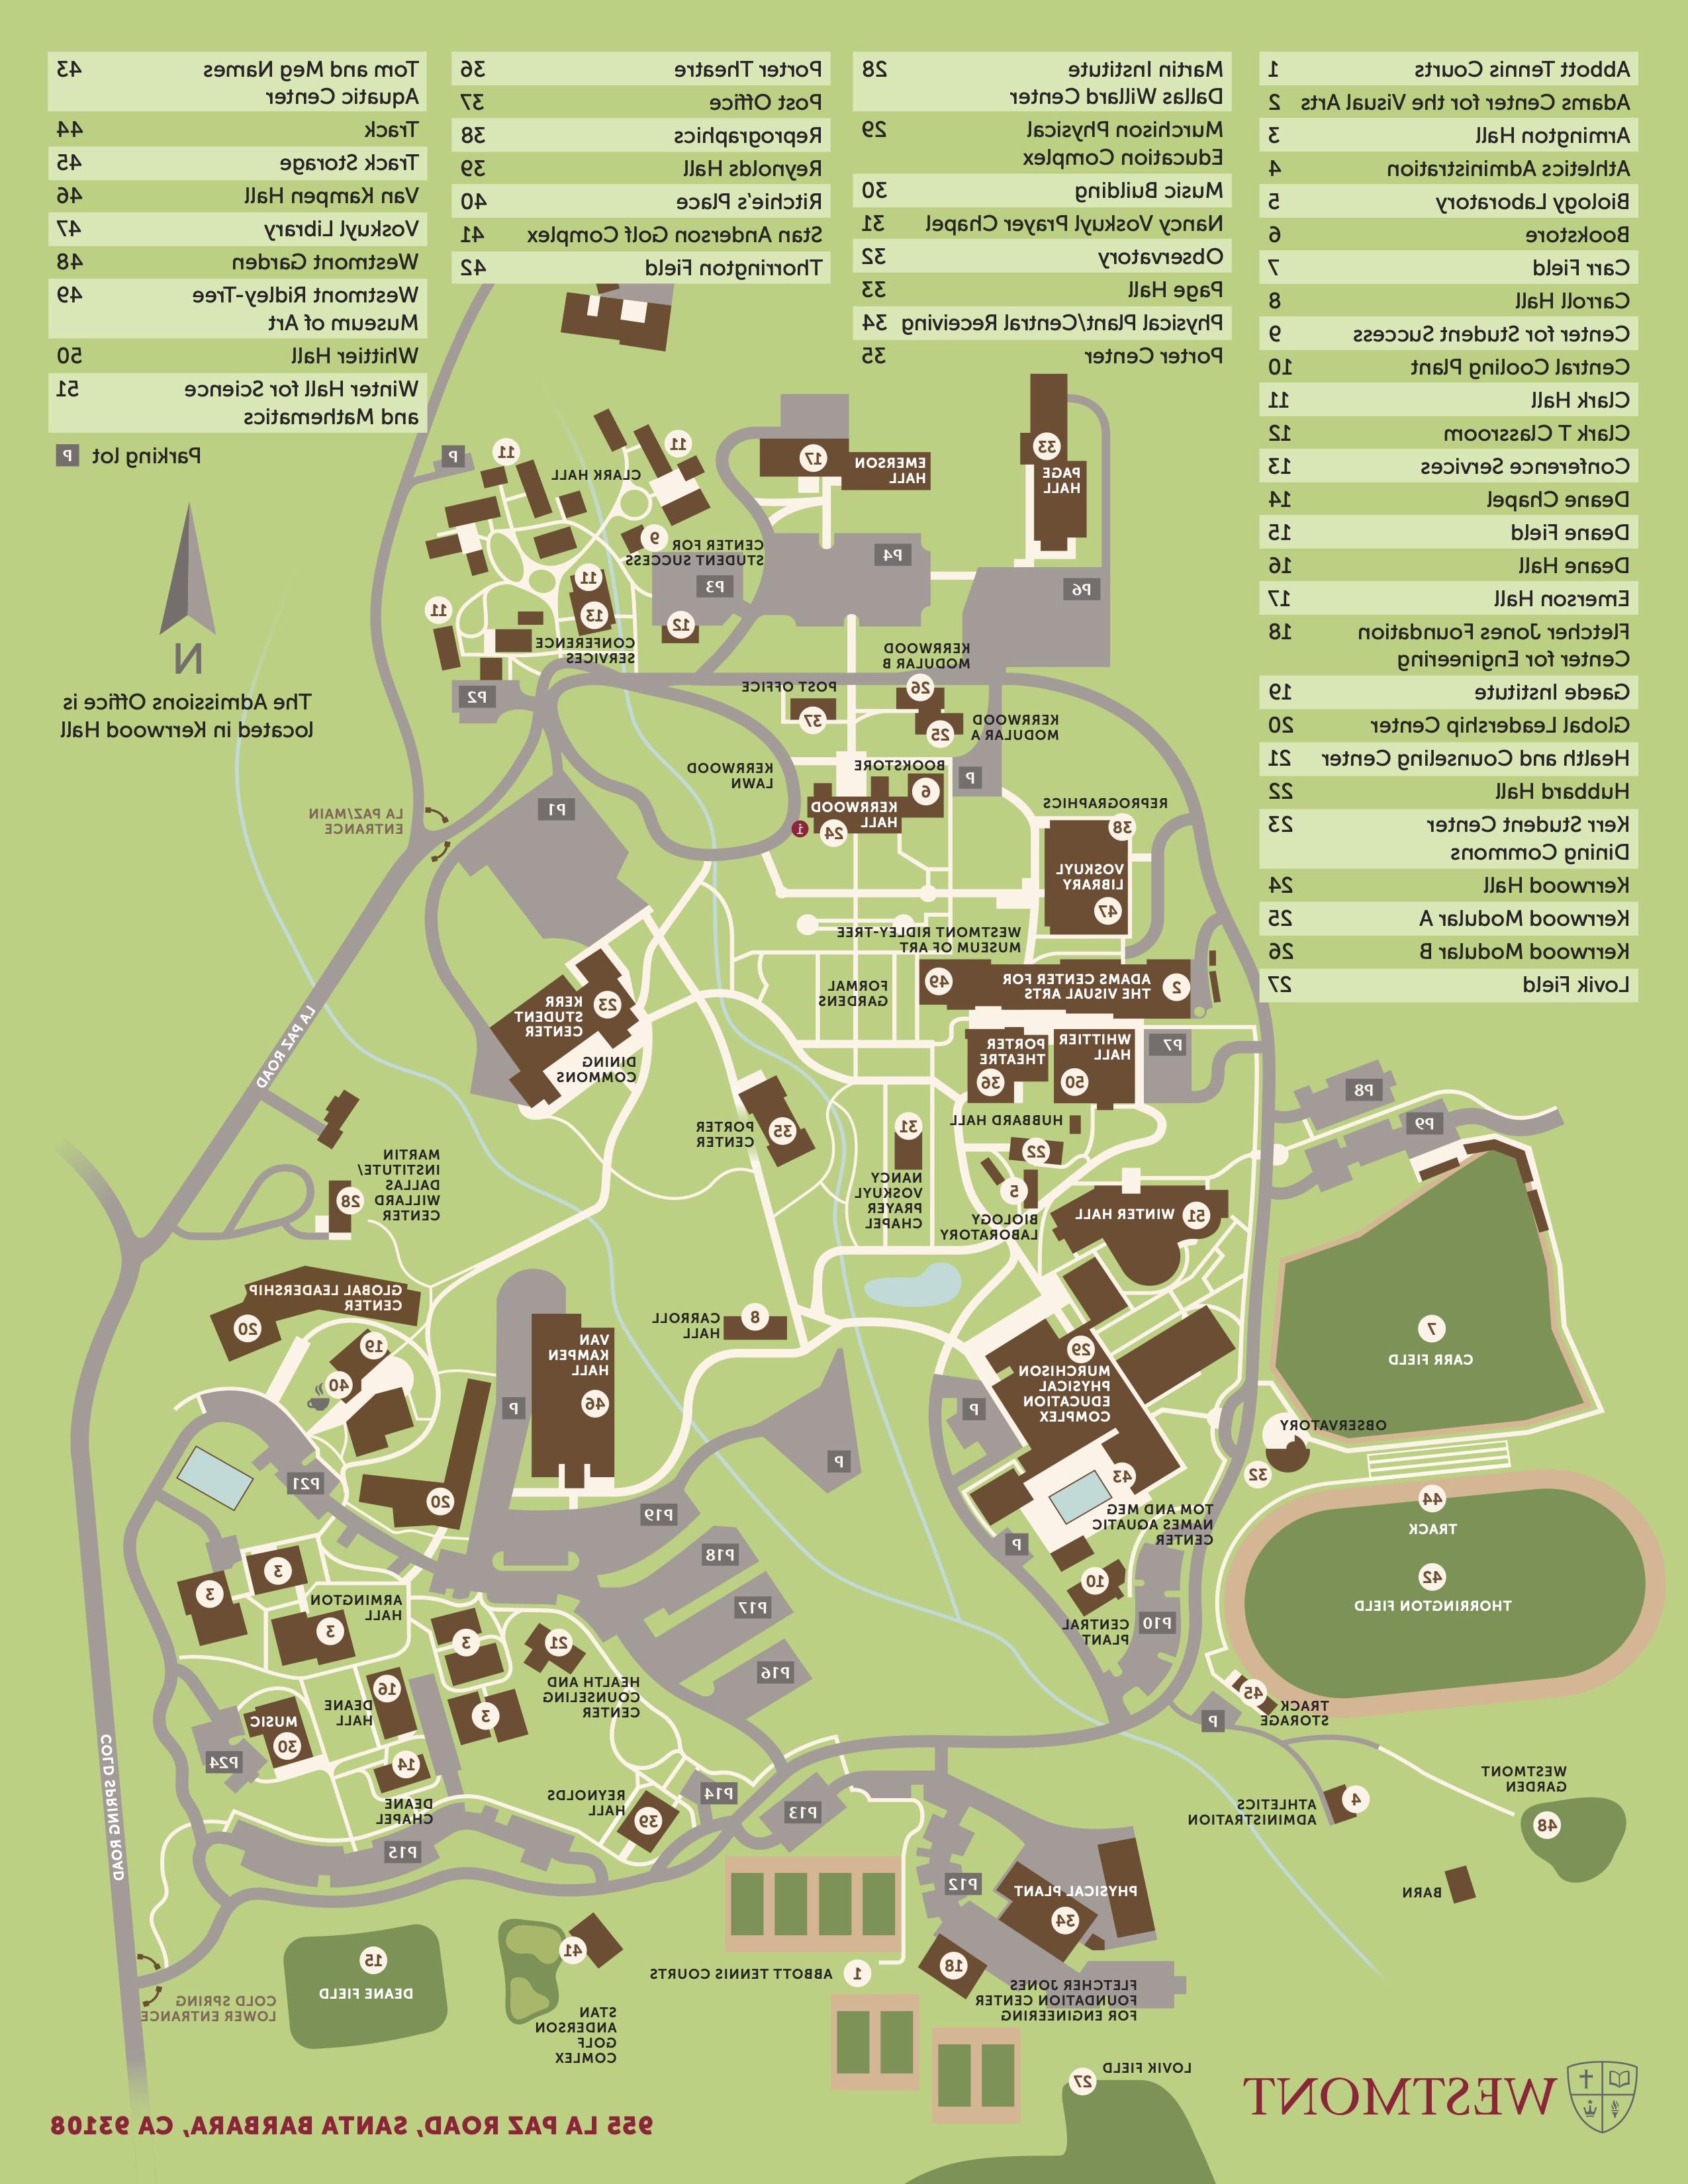 westmont campus map